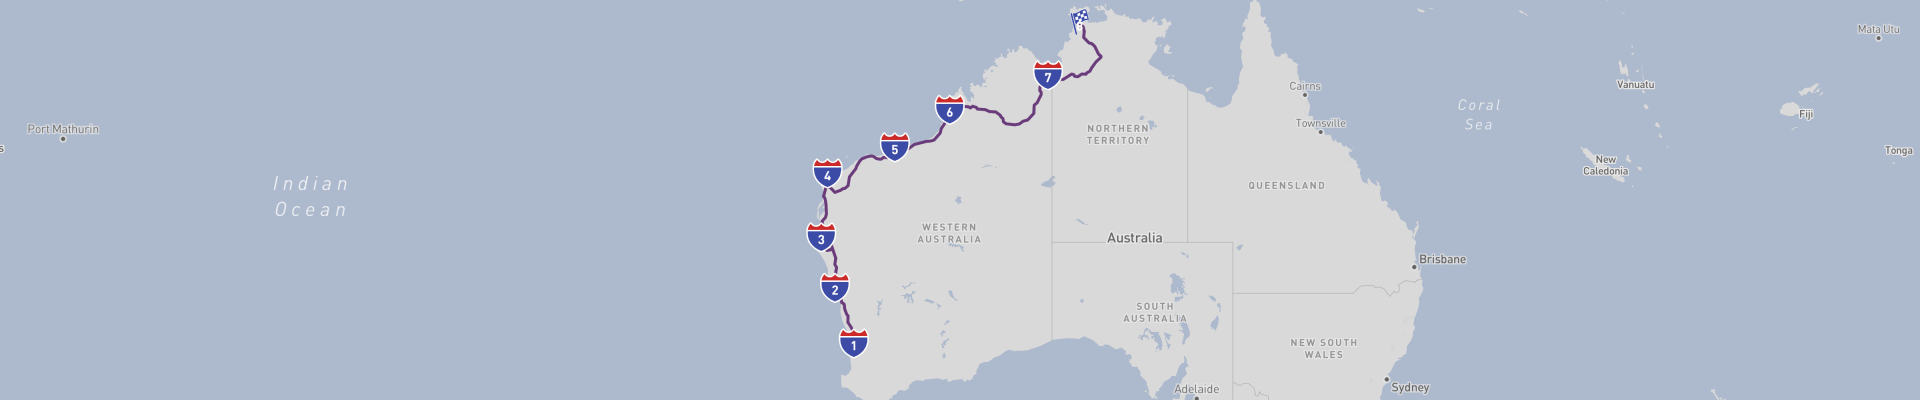 Viagem de carro pela costa oeste da Austrália